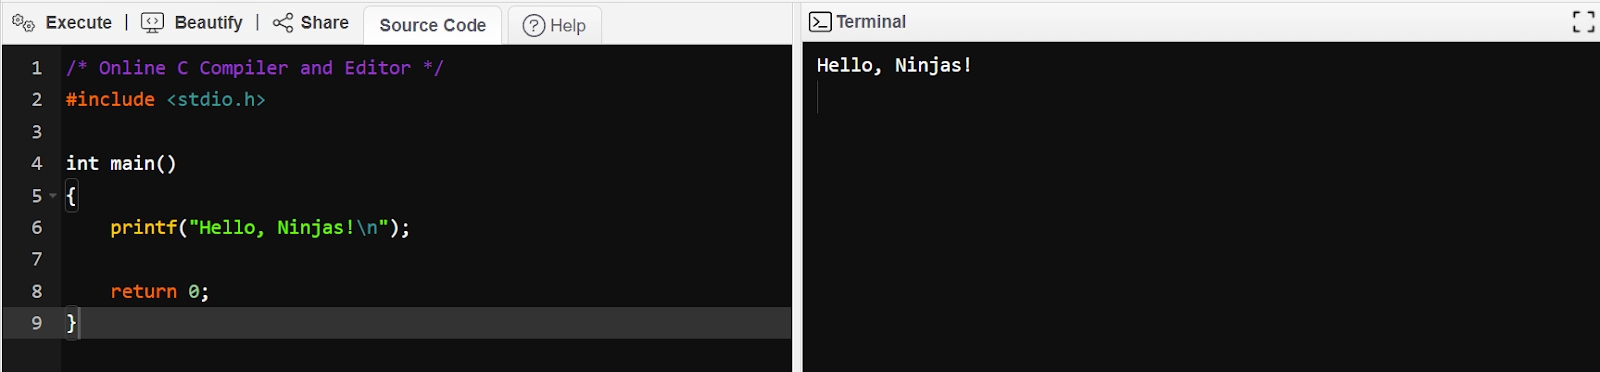 Best C Compiler - Coding Ninjas